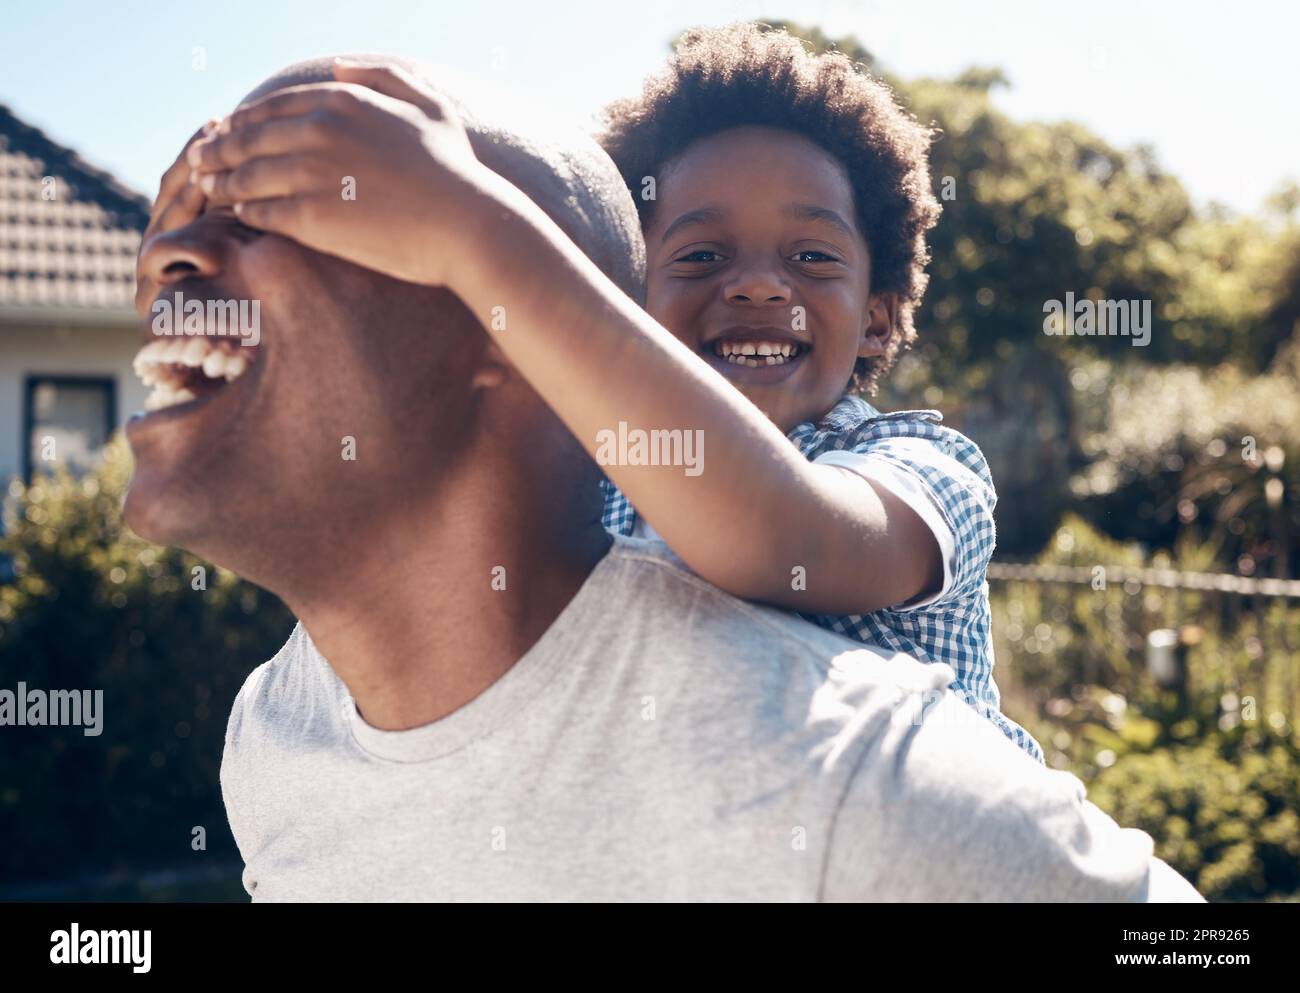 Portrait d'un homme afro-américain heureux en liaison avec son jeune petit garçon à l'extérieur. Deux hommes noirs, père et fils, ont l'air heureux et positifs tout en étant affectueux et en jouant dans une cour Banque D'Images